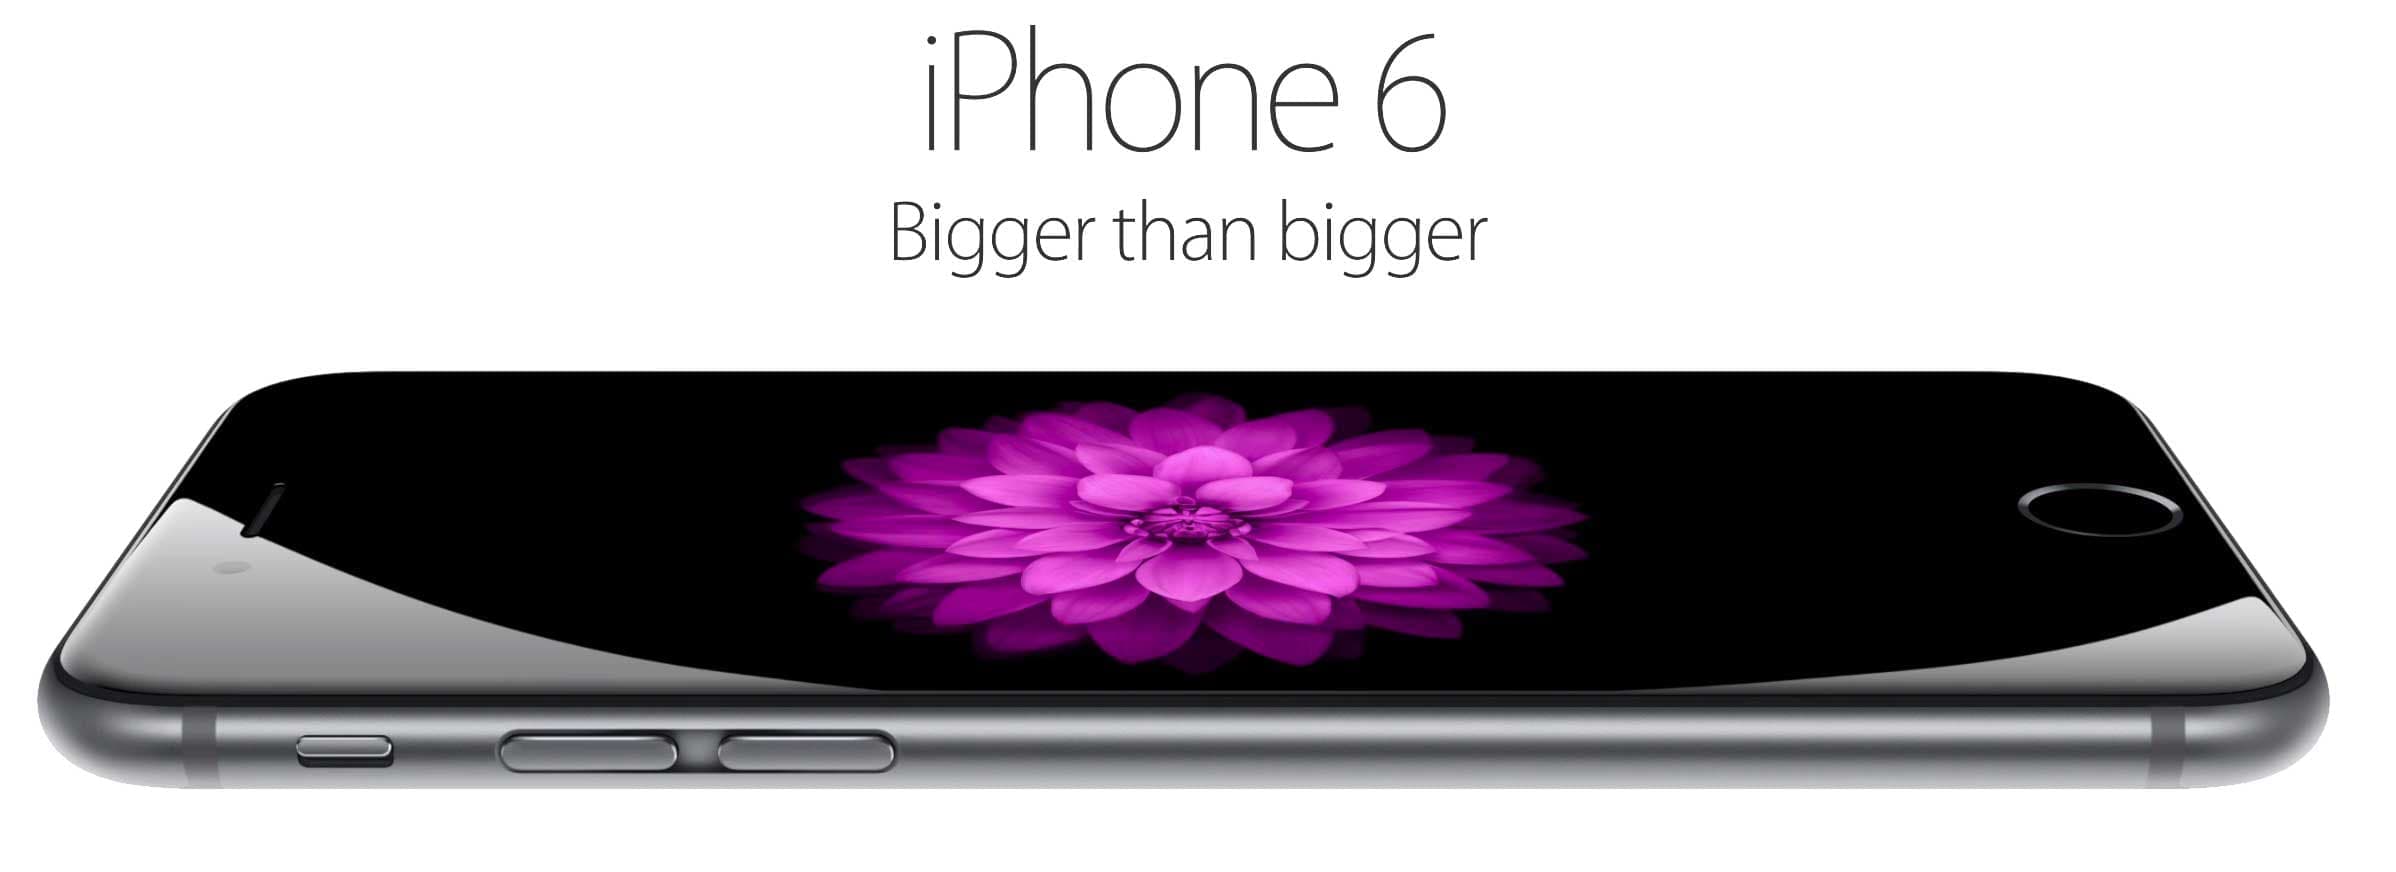 Apple iPhone 6 не просто больше, он лучше во всех отношениях. 